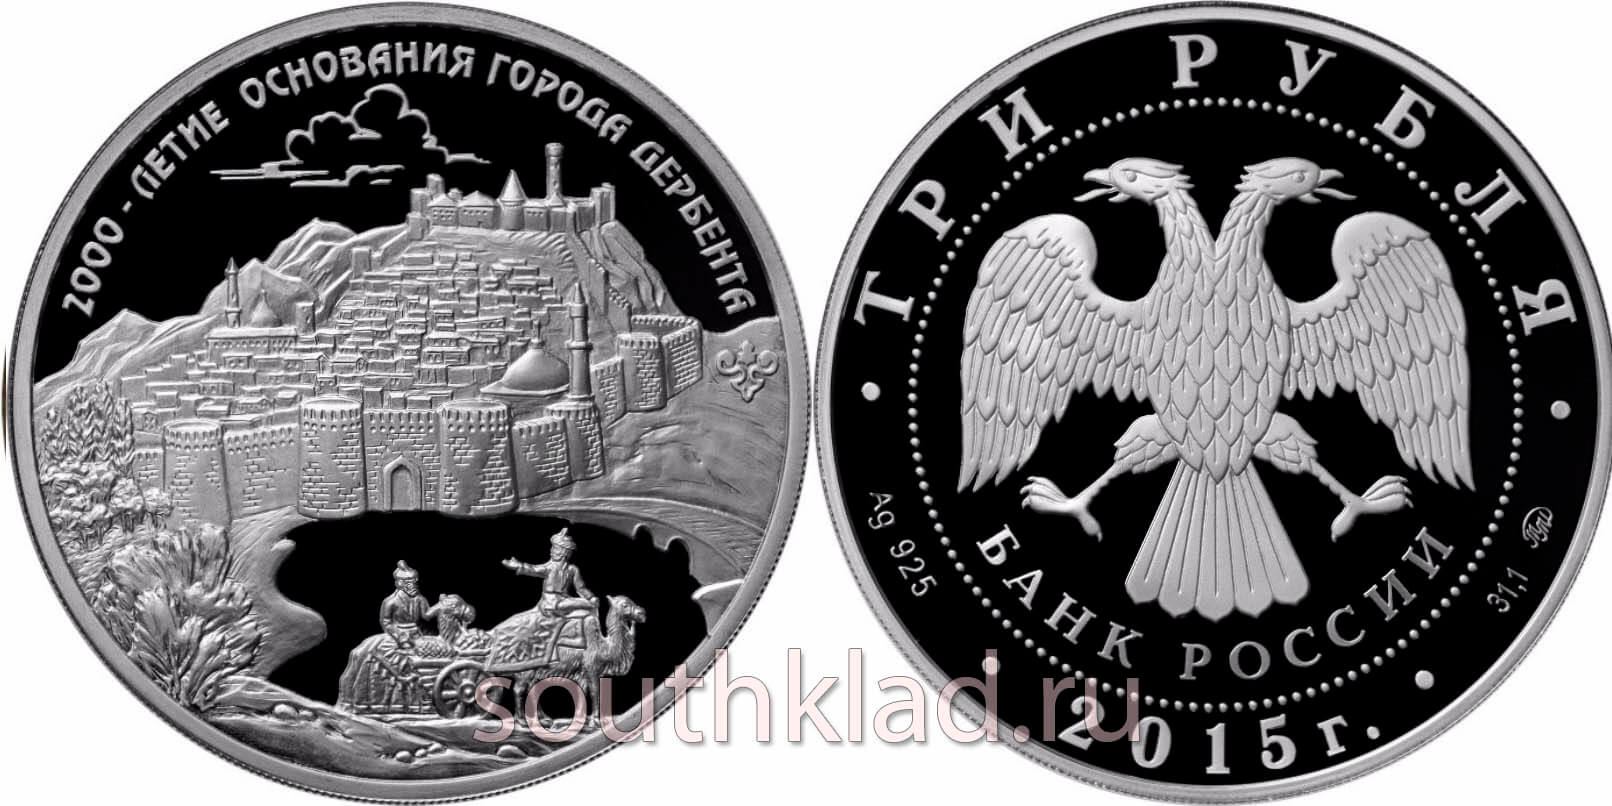 3 рубля 2000-летие основания г. Дербента, Республика Дагестан